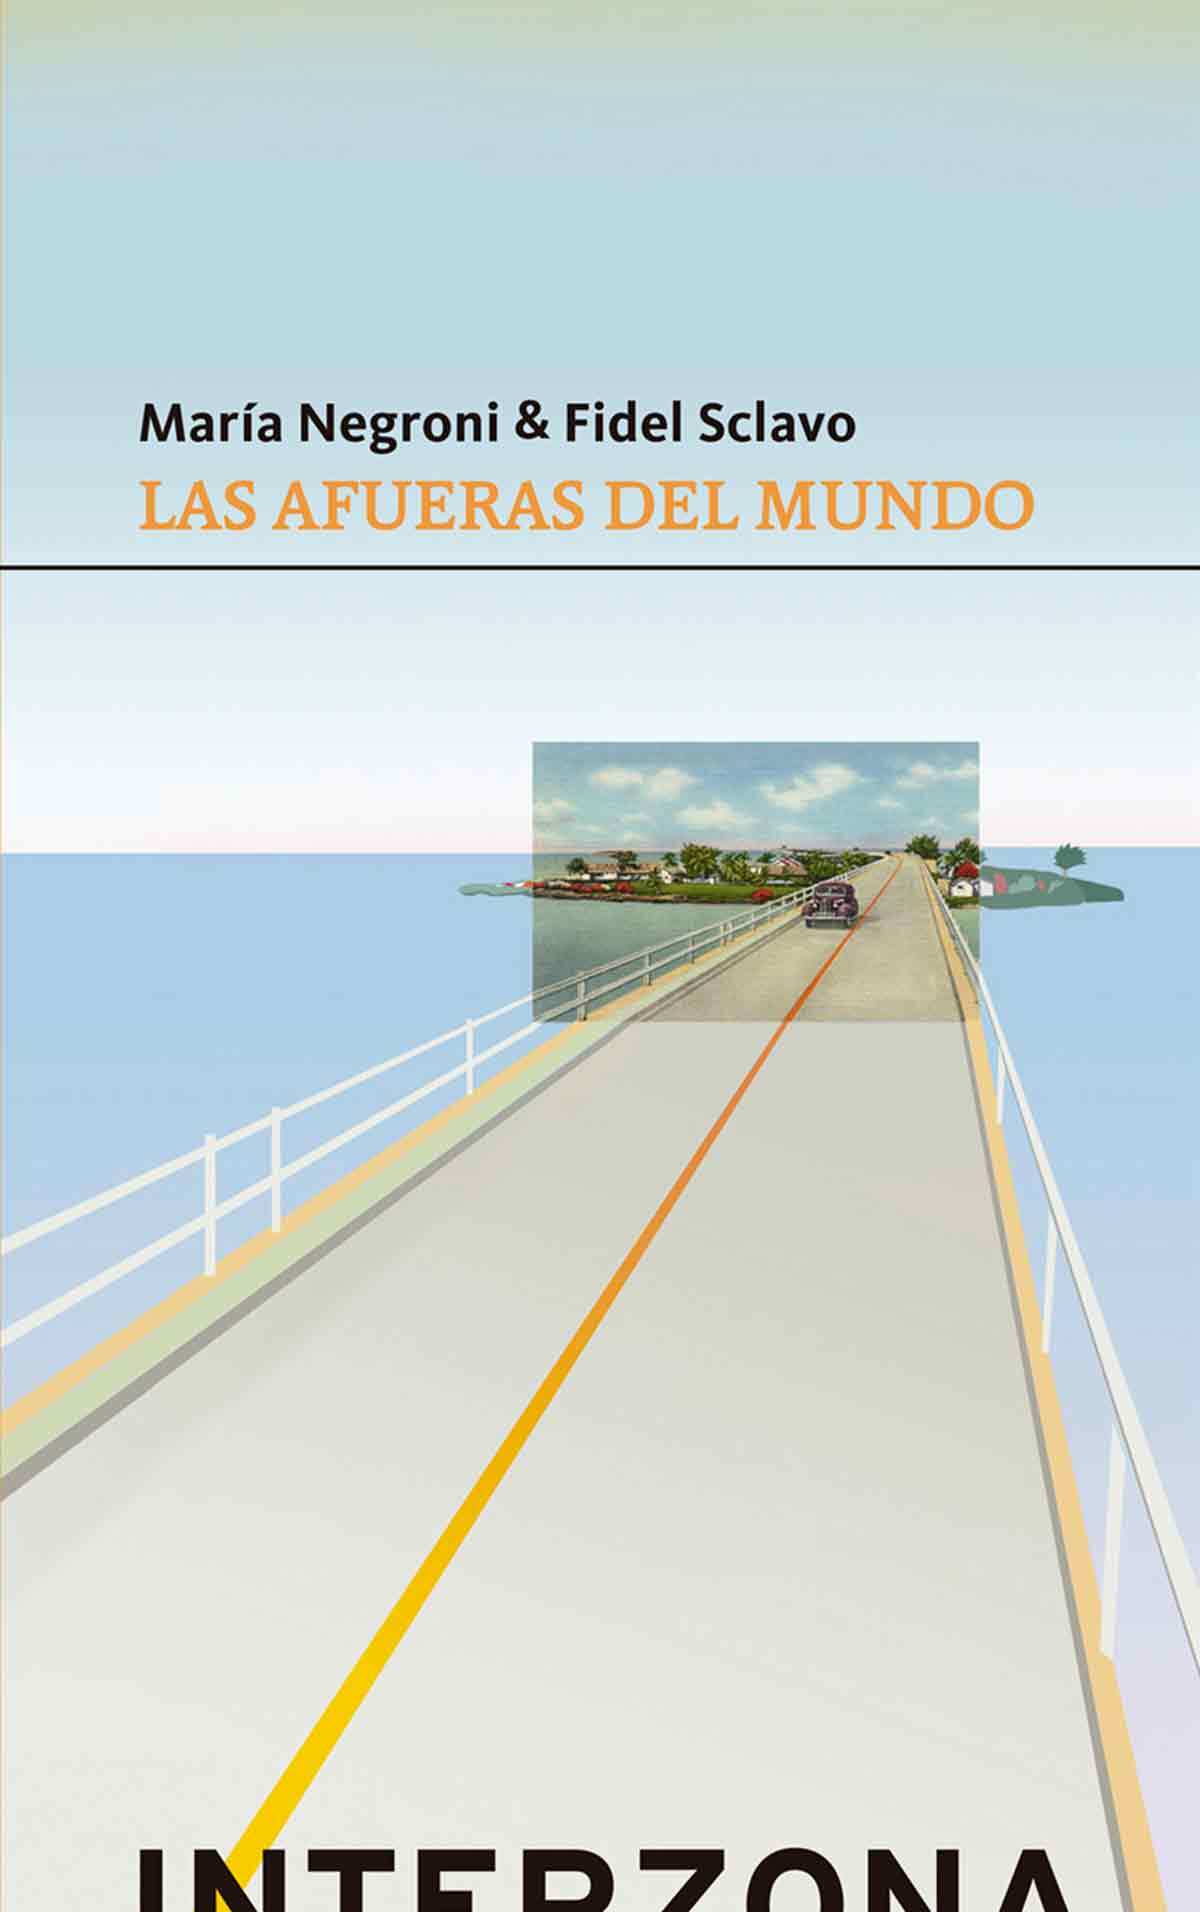 Las afueras del mundo de María Negroni y Fidel Sclavo